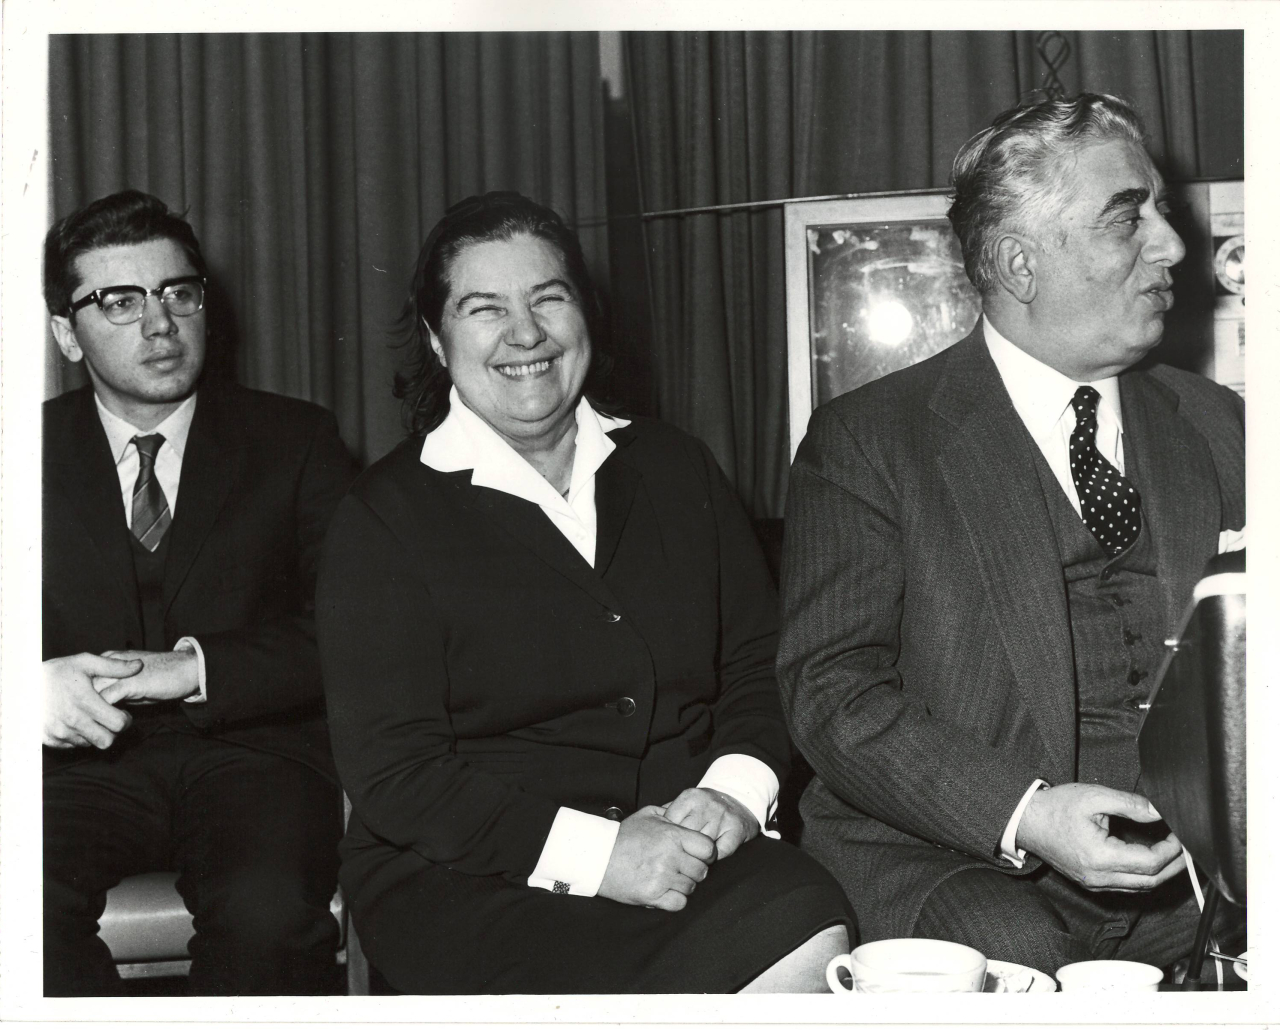 Լուսանկար. Ա. Խաչատրյանը կնոջ՝ Ն. Մակարովայի, իրենց որդու՝ Կարենի հետ ՄԱԿ-ի գրասենյակում մամլո ասուլիսի ժամանակ